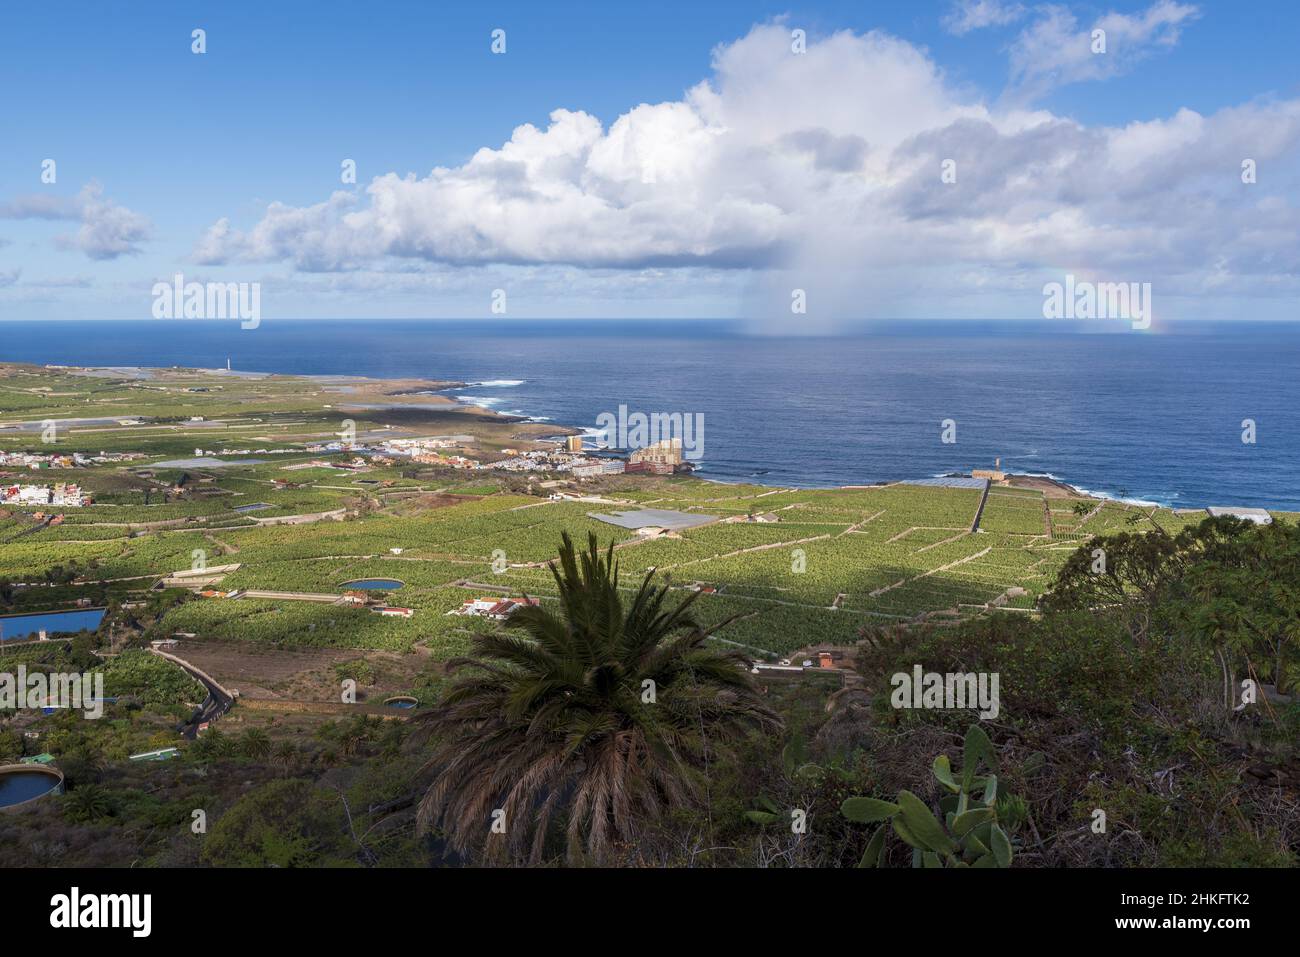 Spagna, Isole Canarie, Tenerife, Los Silos, arcobaleno sull'Oceano Atlantico Foto Stock